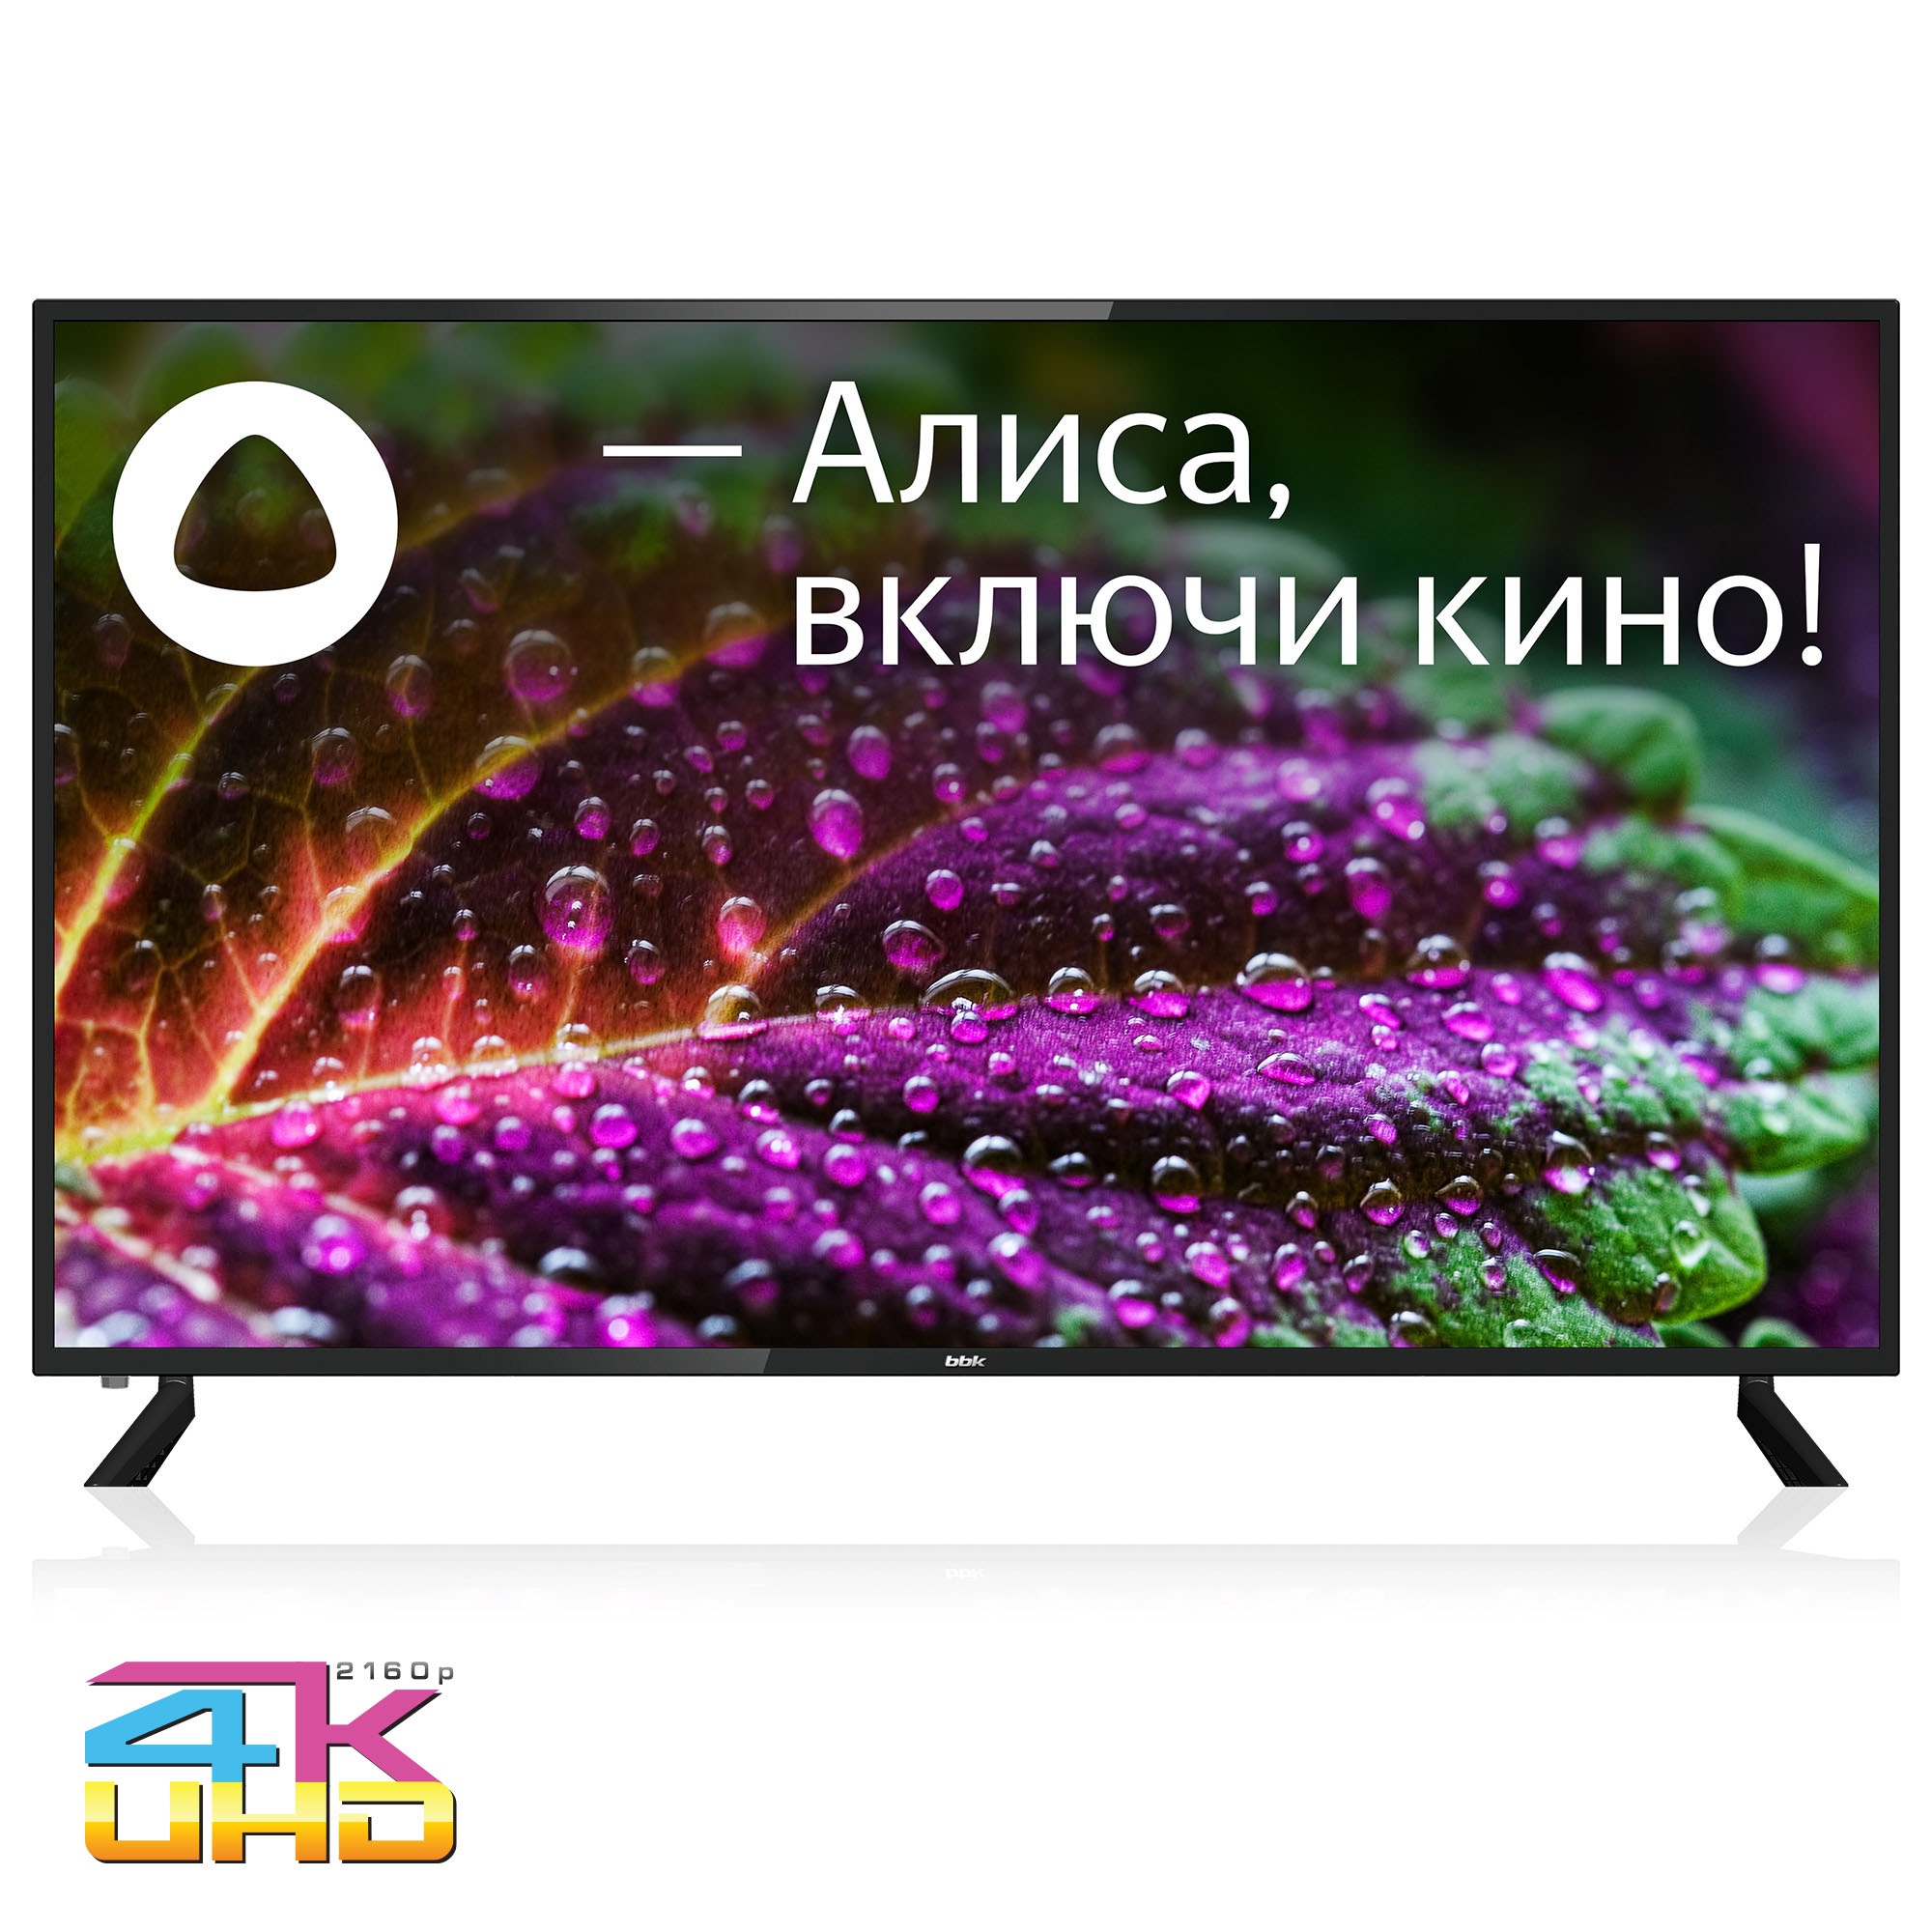 Телевизор BBK 65LED-9201/UTS2C Яндекс.ТВ черный телевизор led starwind 55 sw led55ug403 яндекс тв frameless черный 4k ultra hd 60hz dvb t 1029547